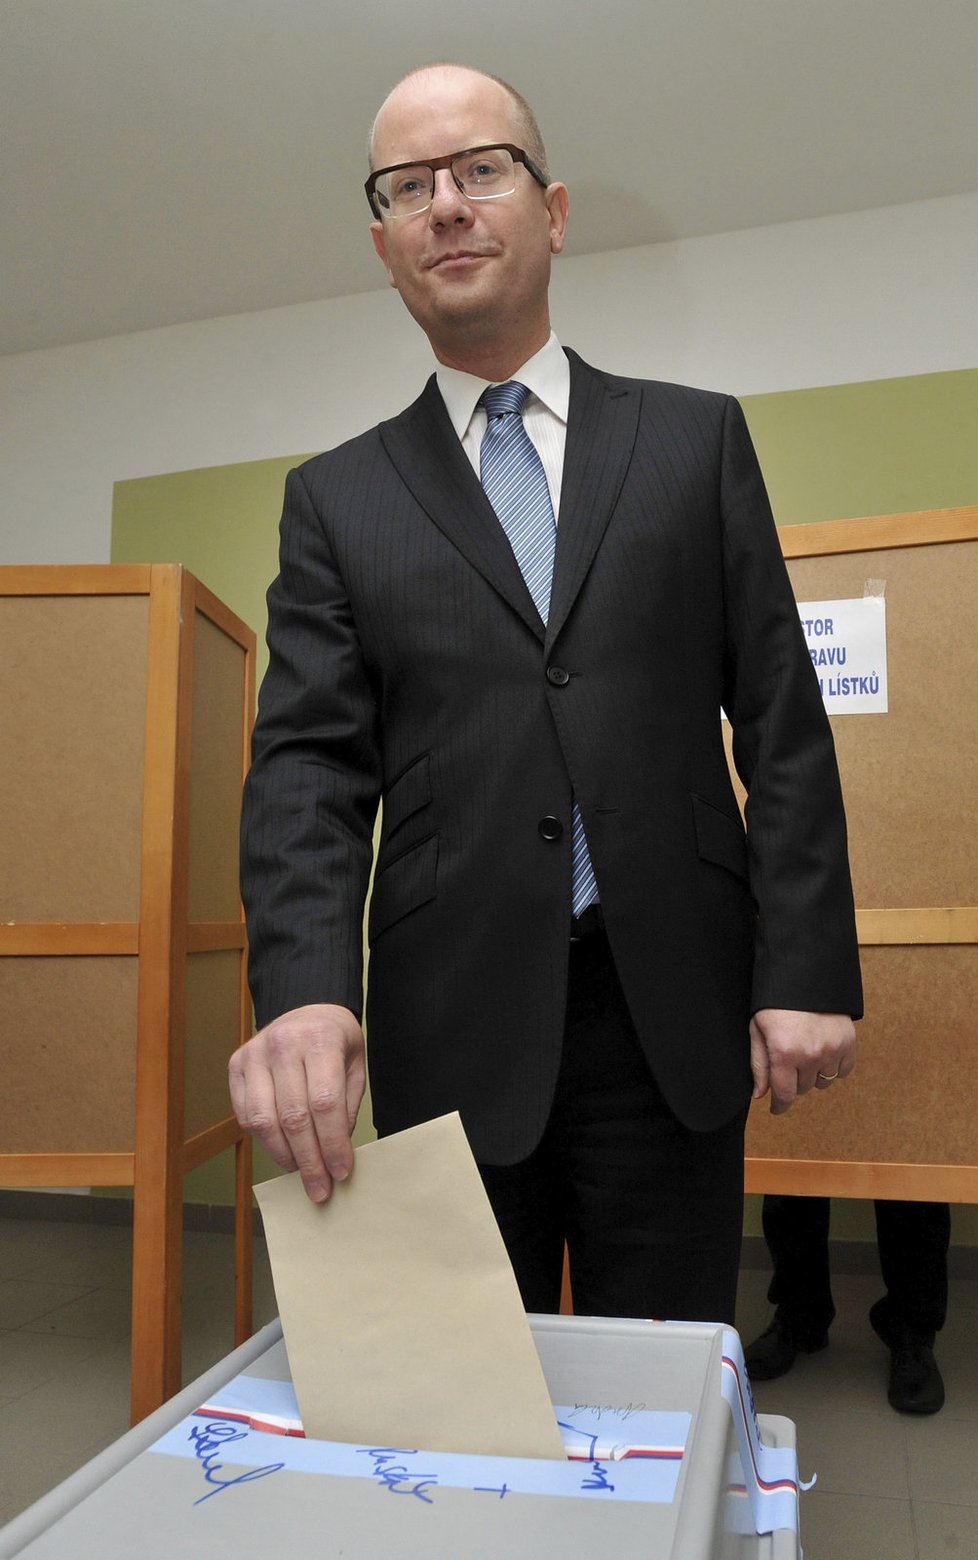 Premiér Bohuslav Sobotka odevzdal svůj hlas ve druhém kole senátních voleb 17. října ve Slavkově u Brna.